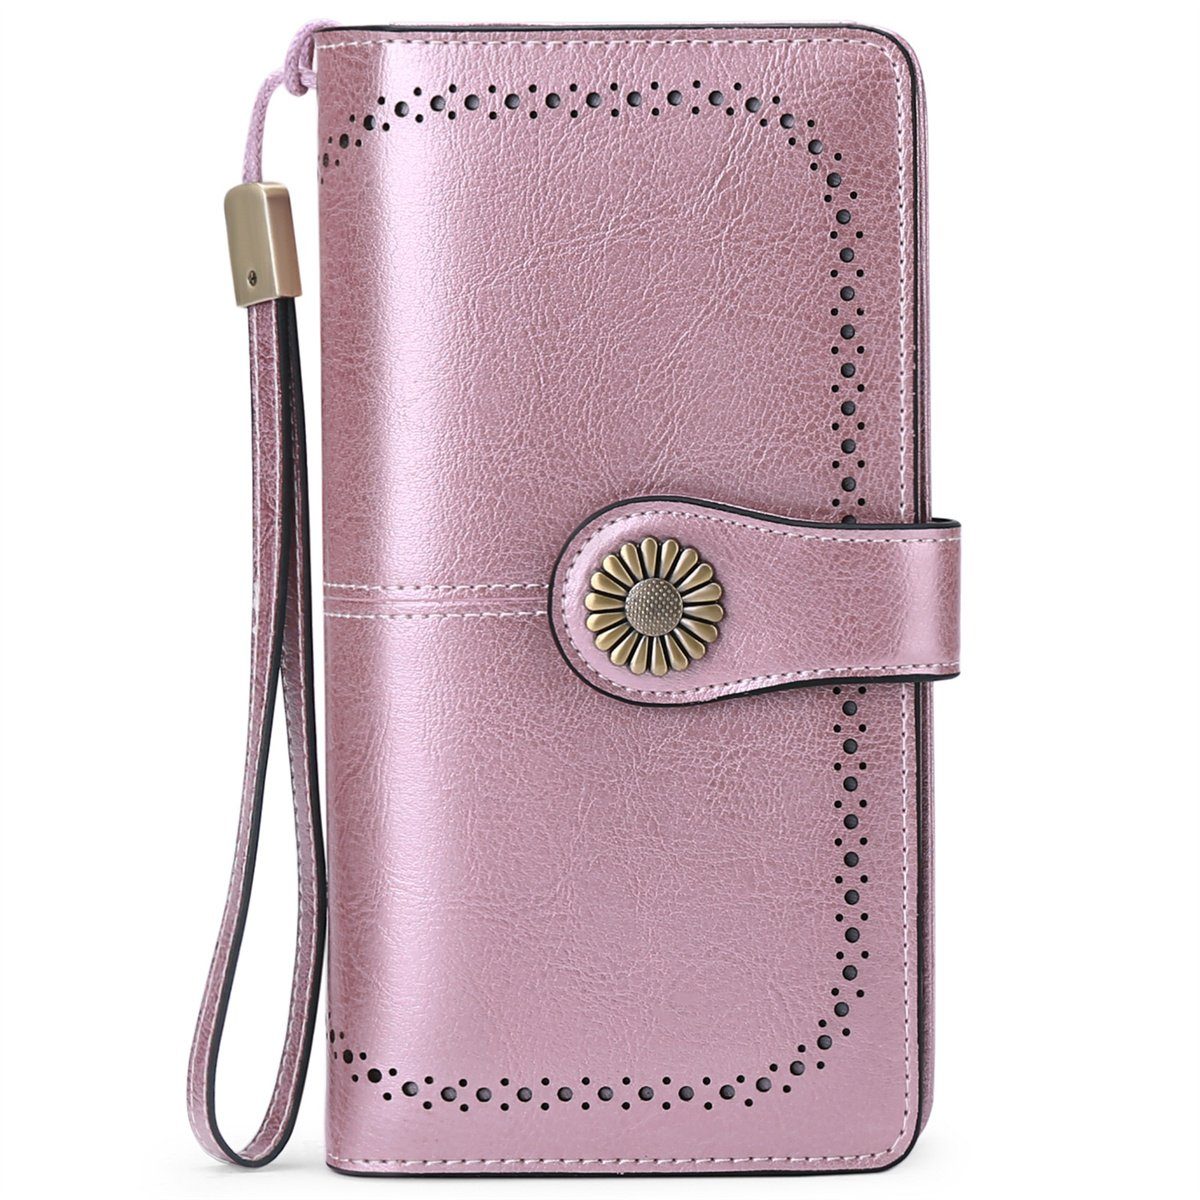 Lila RFID-Schutz carefully mit Echtleder-Geldbörse und Kartenfächern selected Brieftasche mehreren